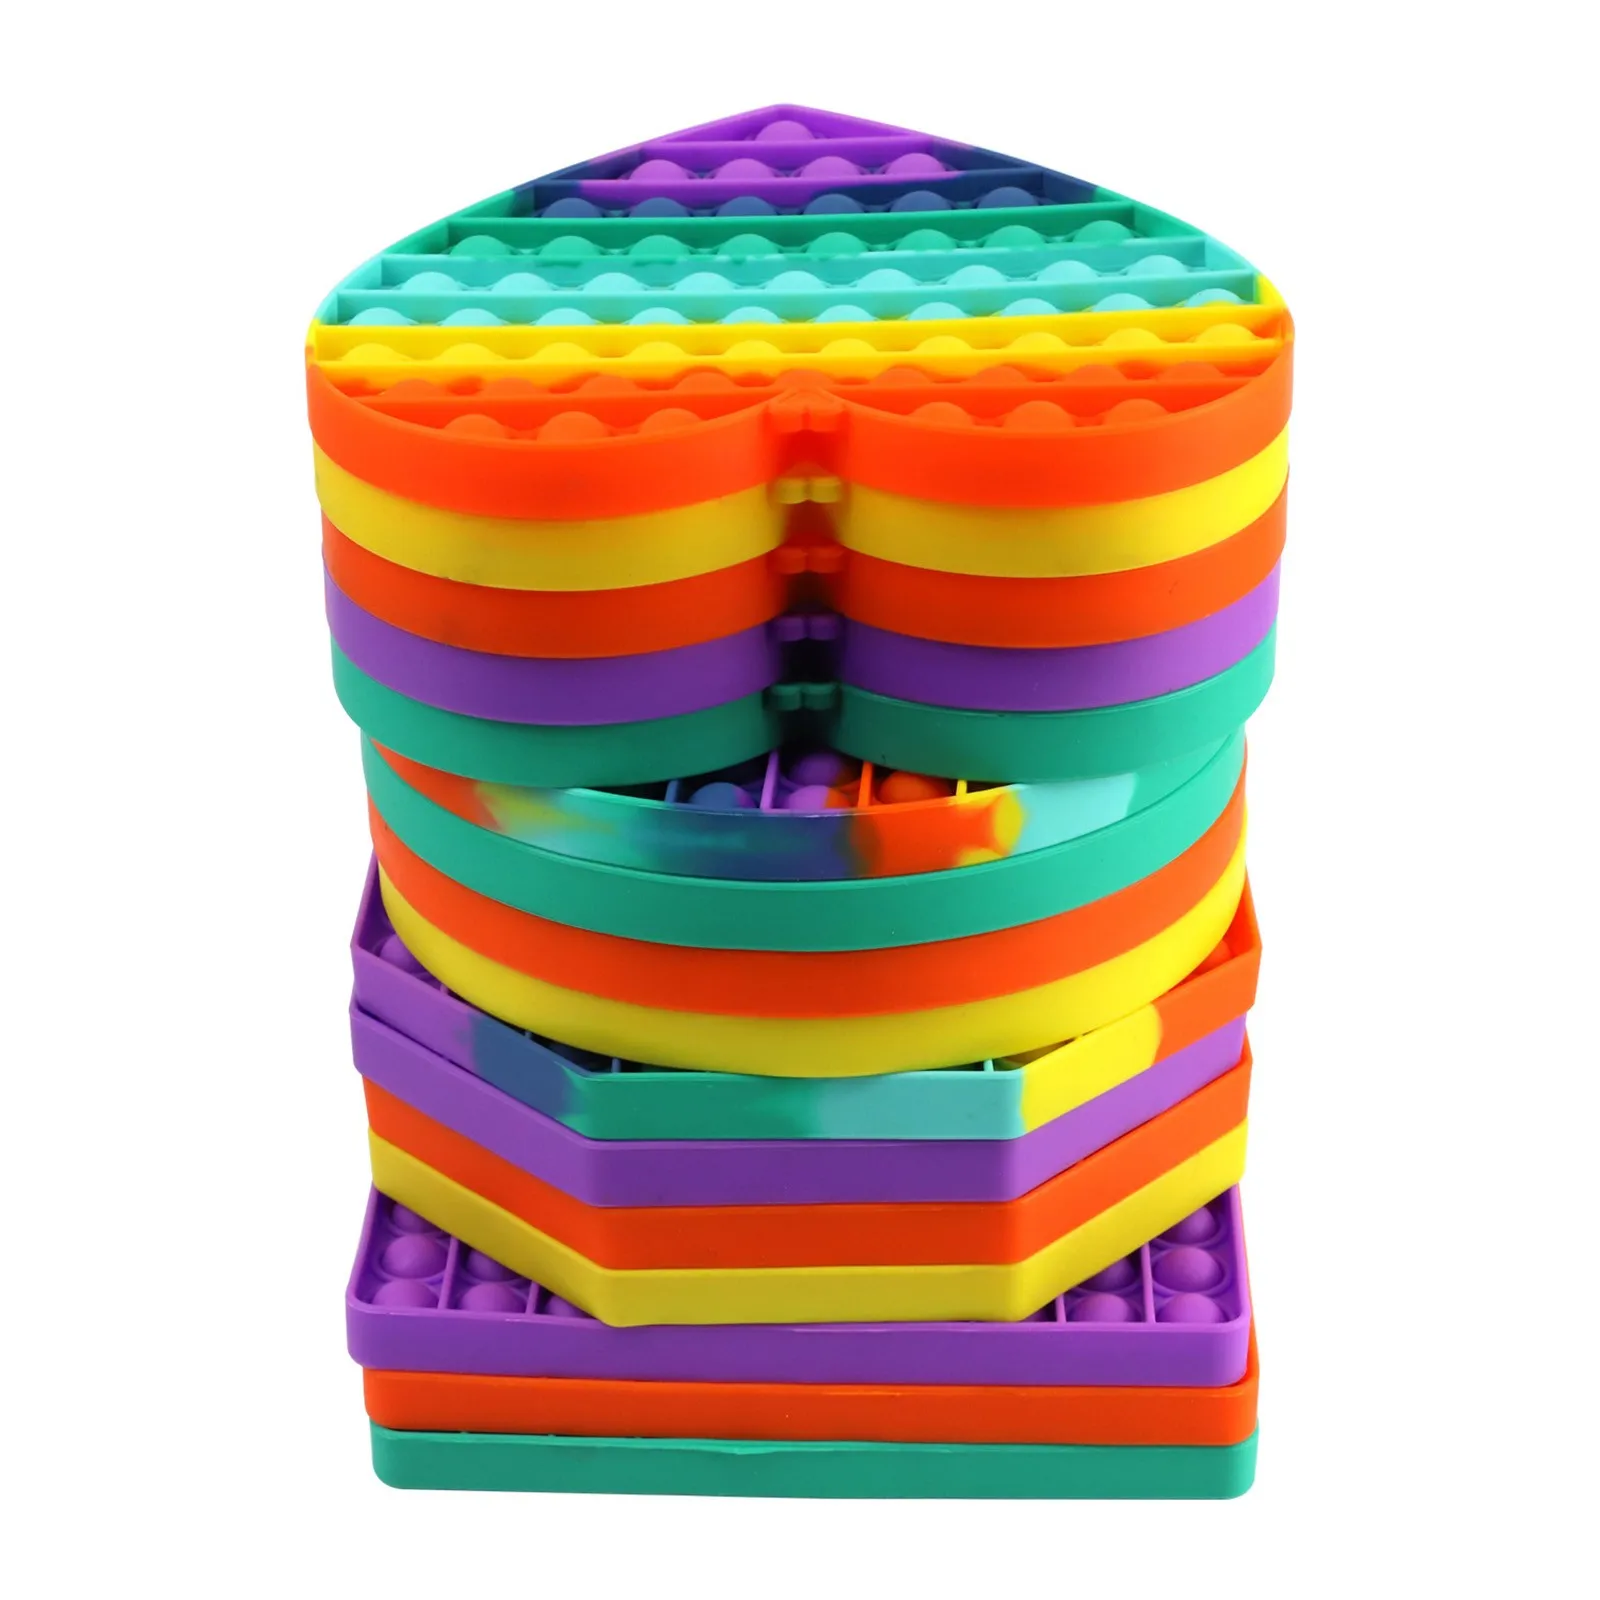 

NEW BIG SIZE Fidget Toys Pops It Square Antistress Toy Bubble Figet Sensory Squishy Jouet Pour Autiste For Adult Kids Gift